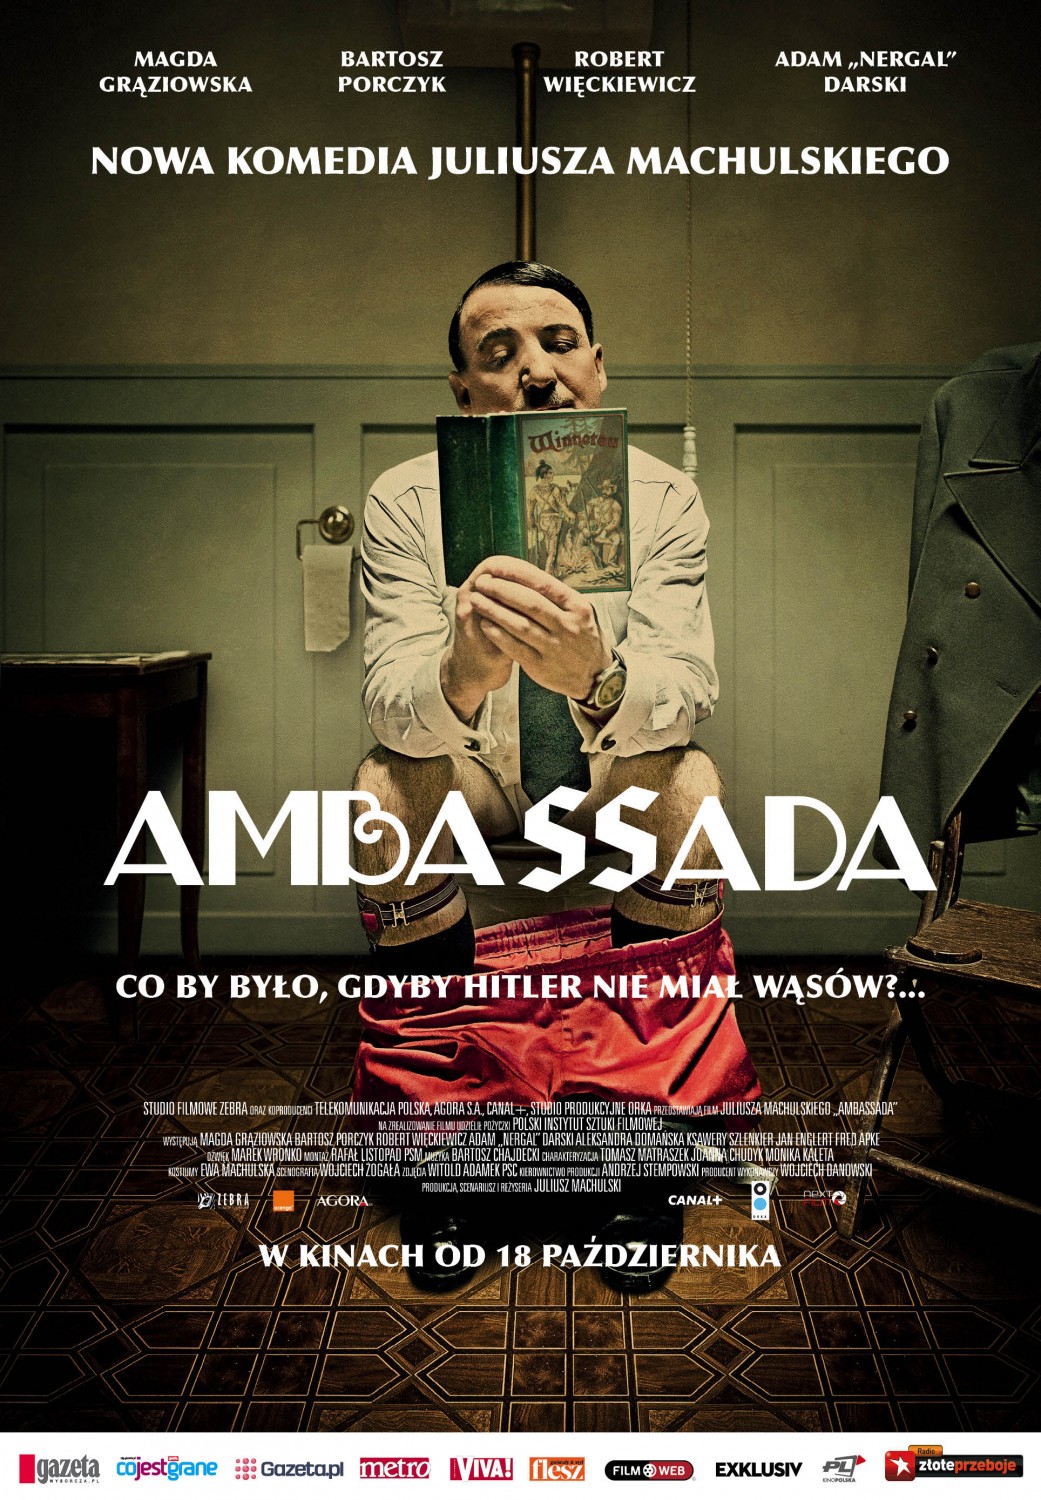 Extra Large Movie Poster Image for AmbaSSada (#1 of 2)